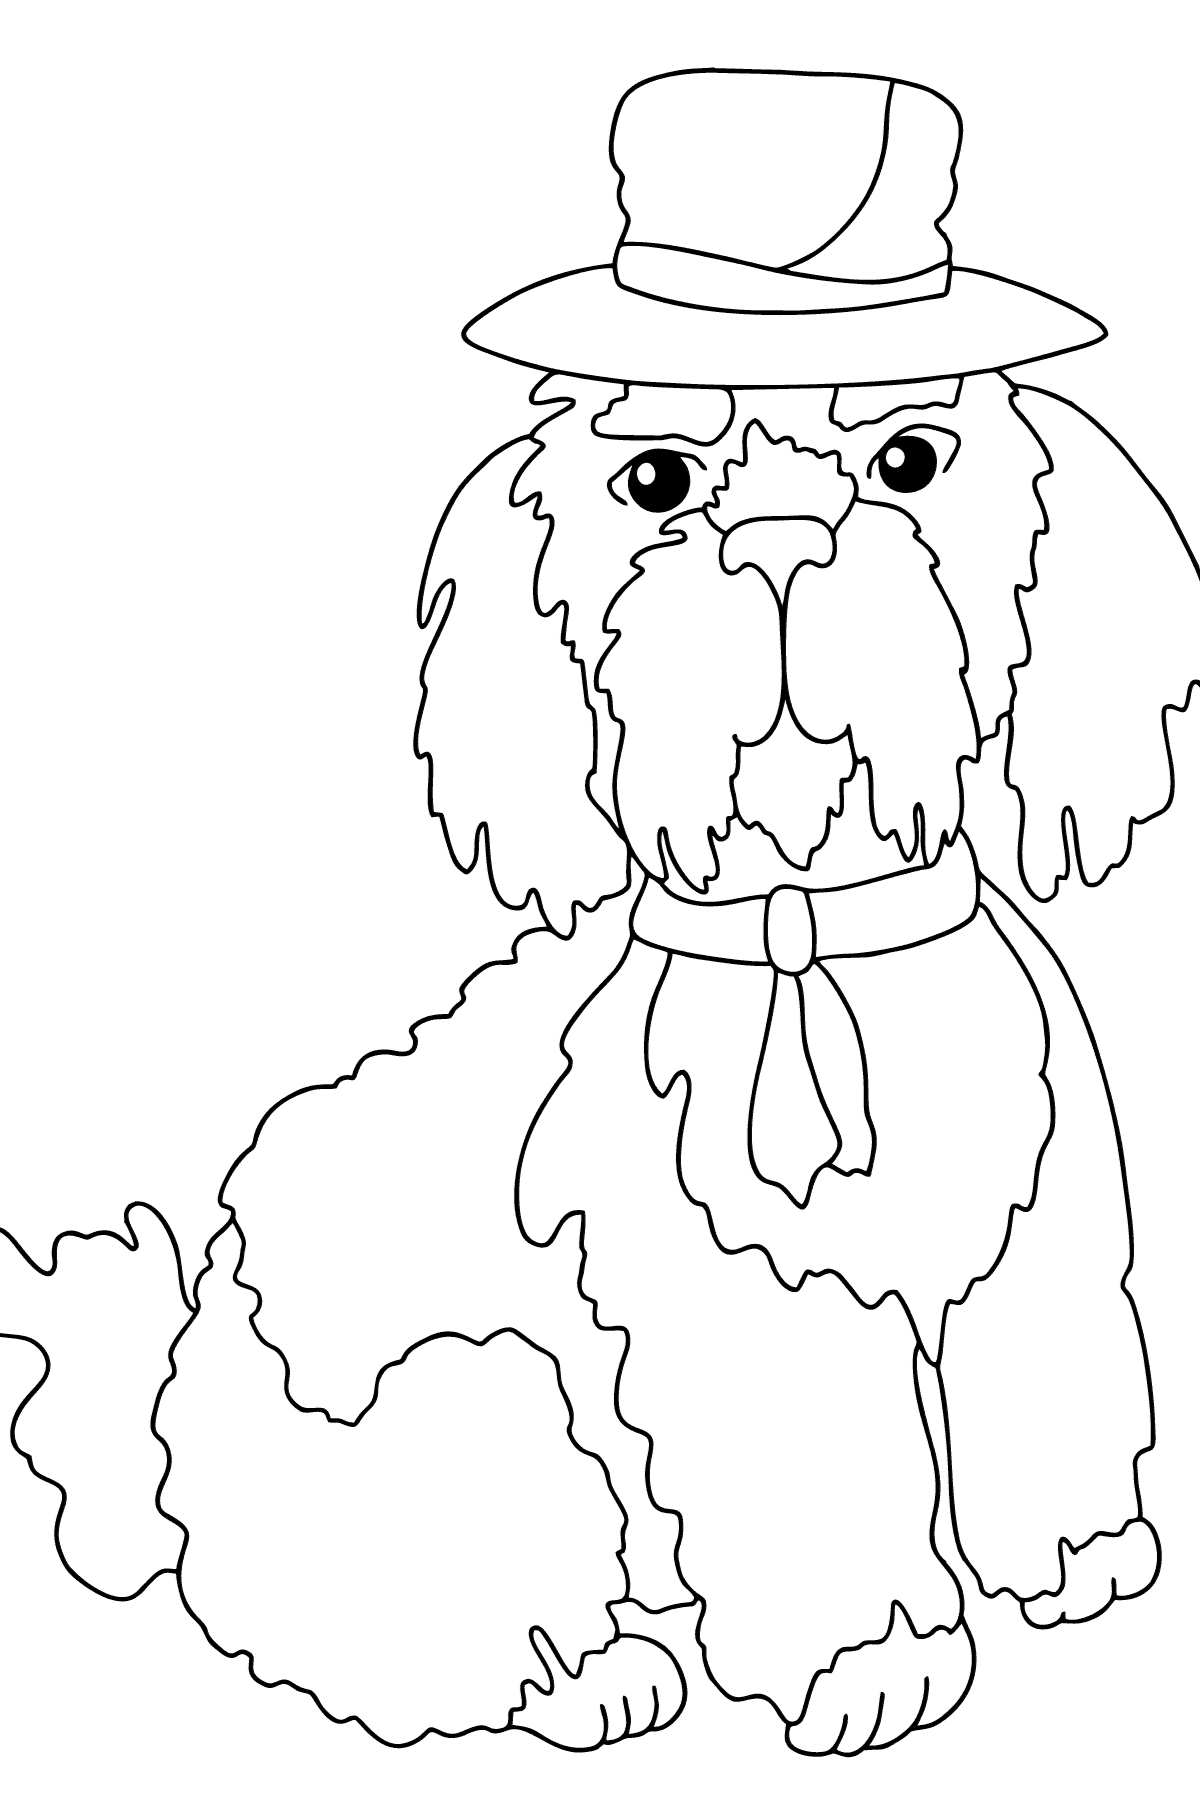 Dibujo para Colorear - Un Perro en un Sombrero Lujoso - Colorear para Niños